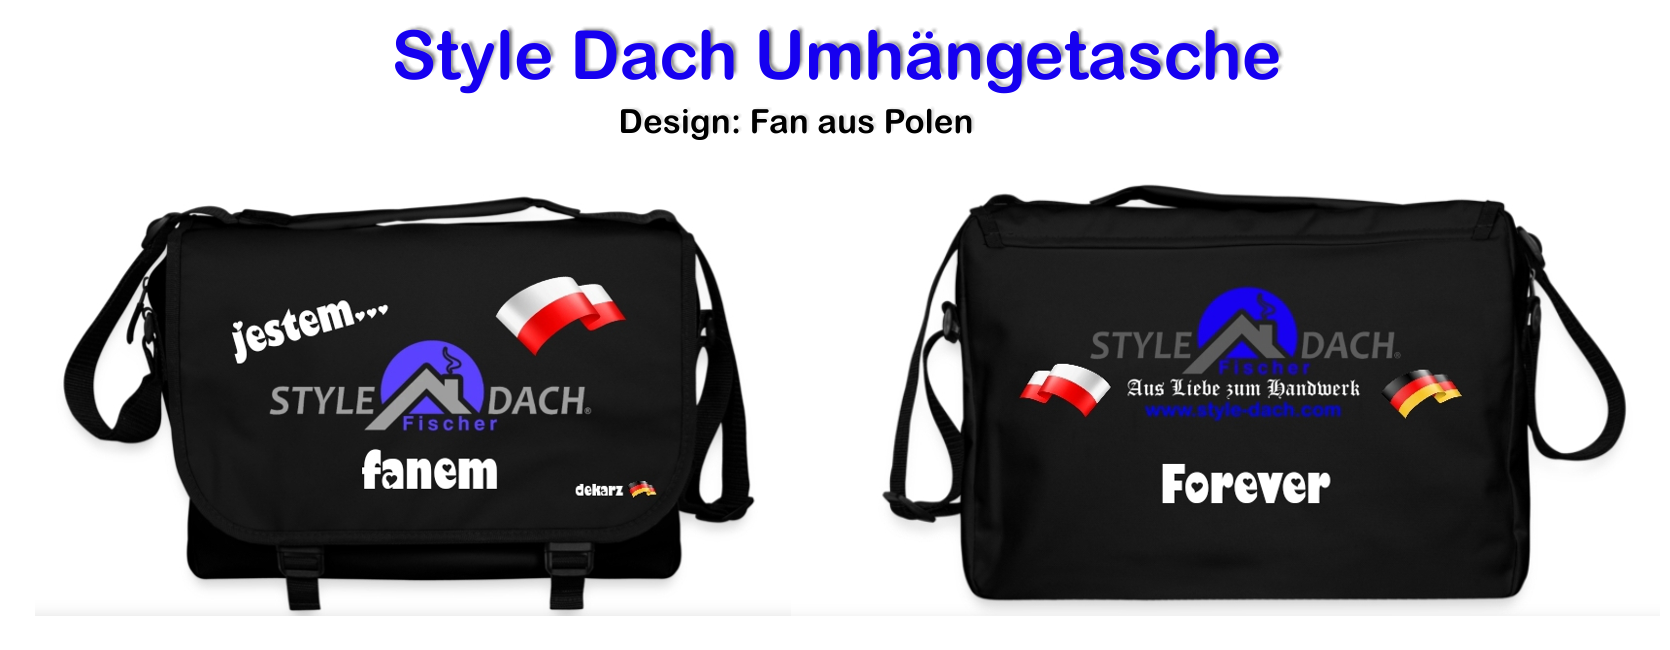 Ich bin Fan - Laptop Tasche Polnisches Design